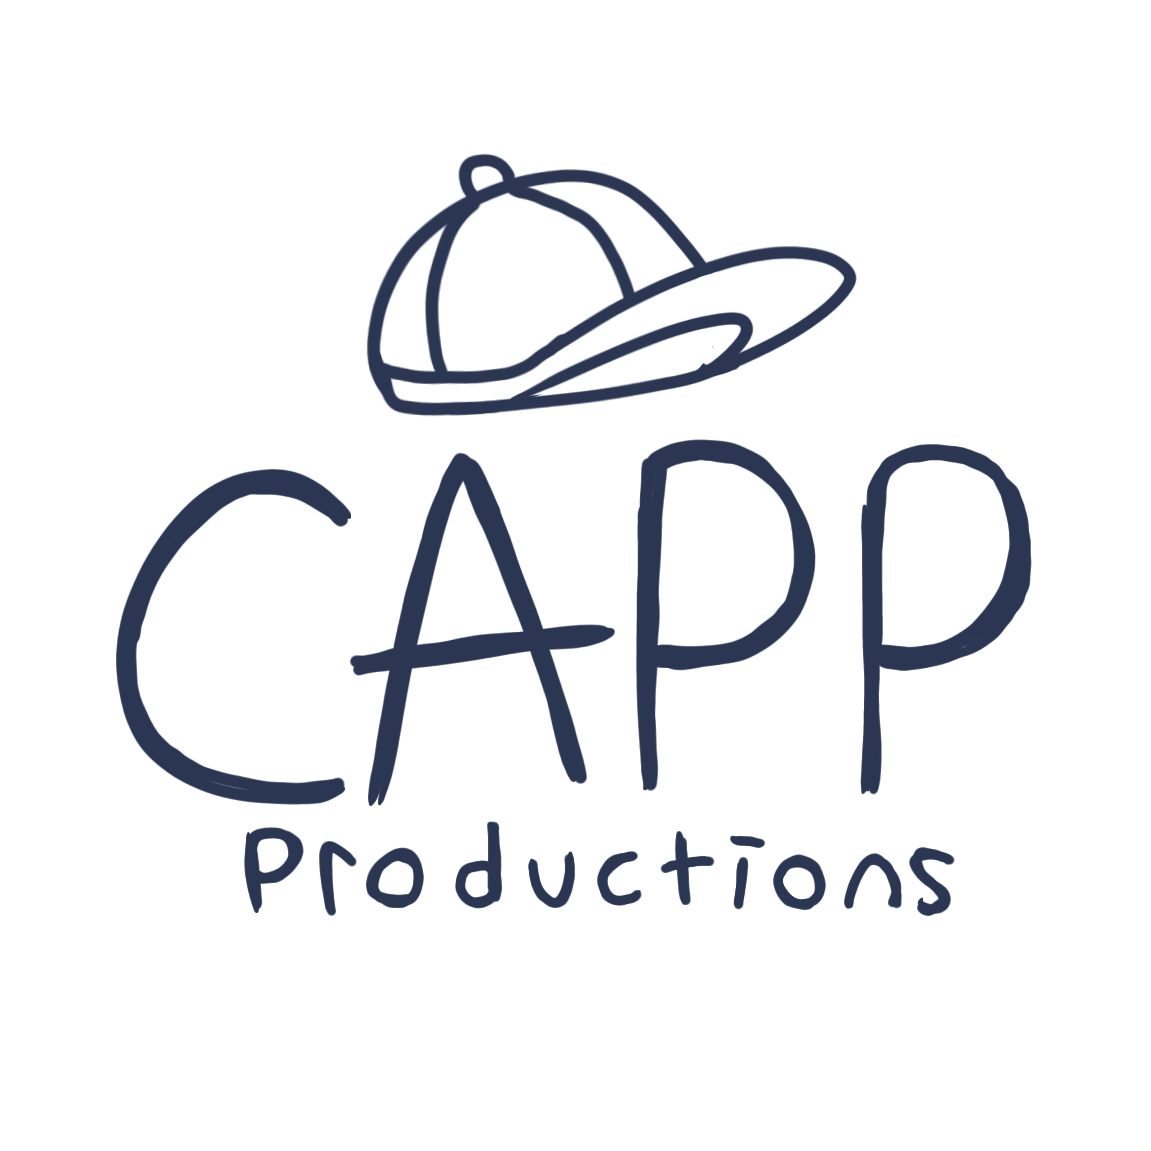 CAPP Productions